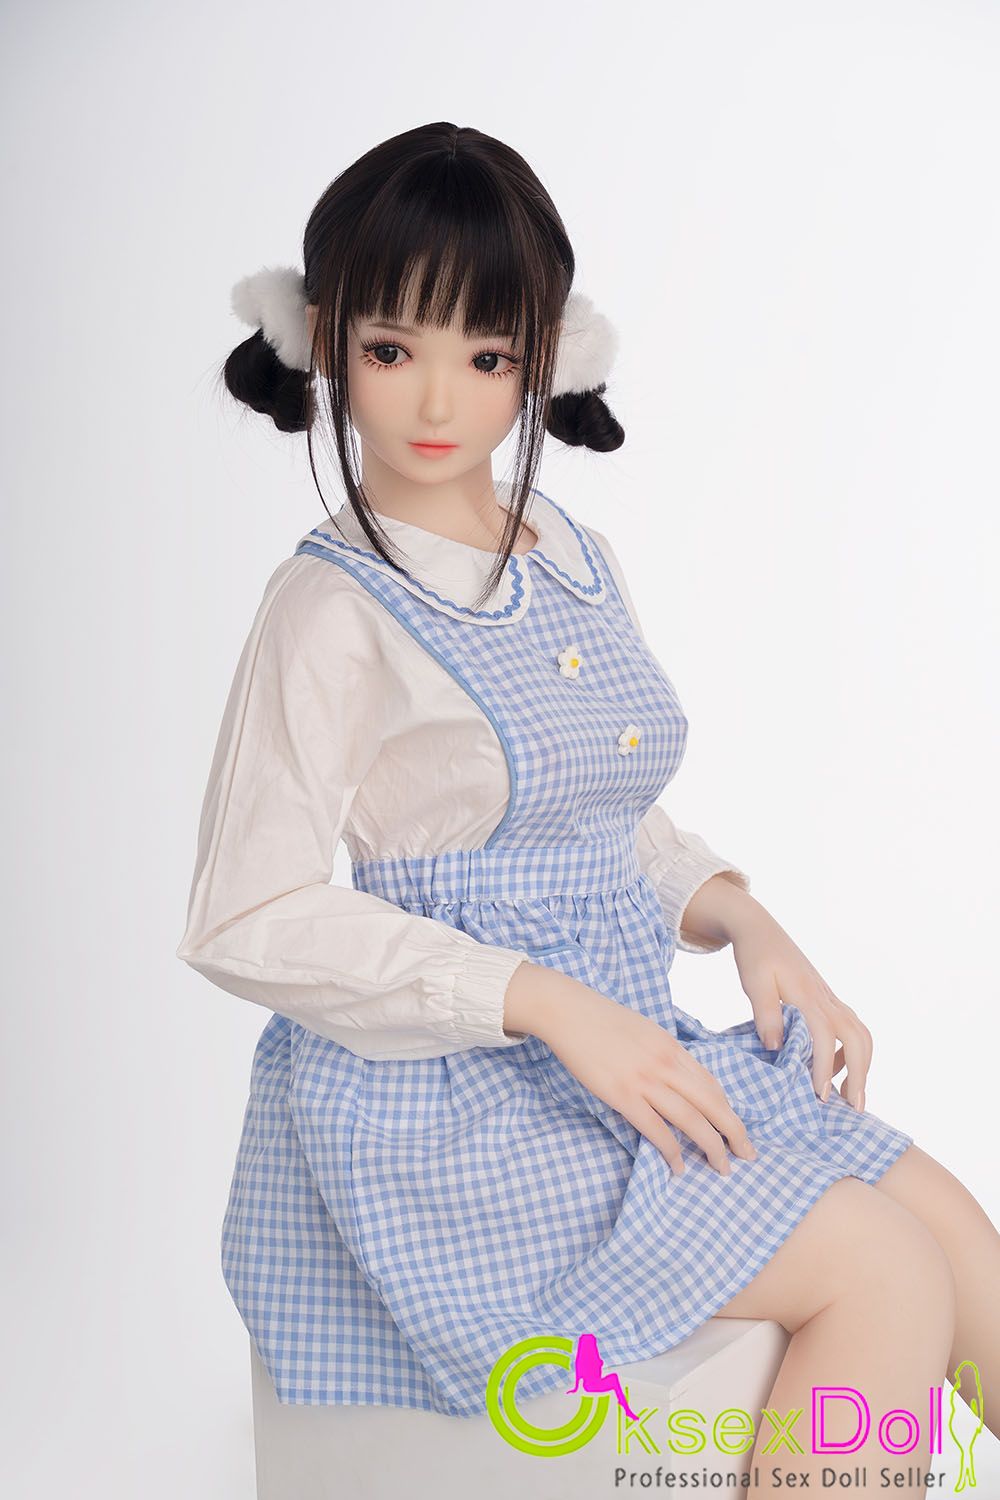 Japanese Teen Dolls for Men images